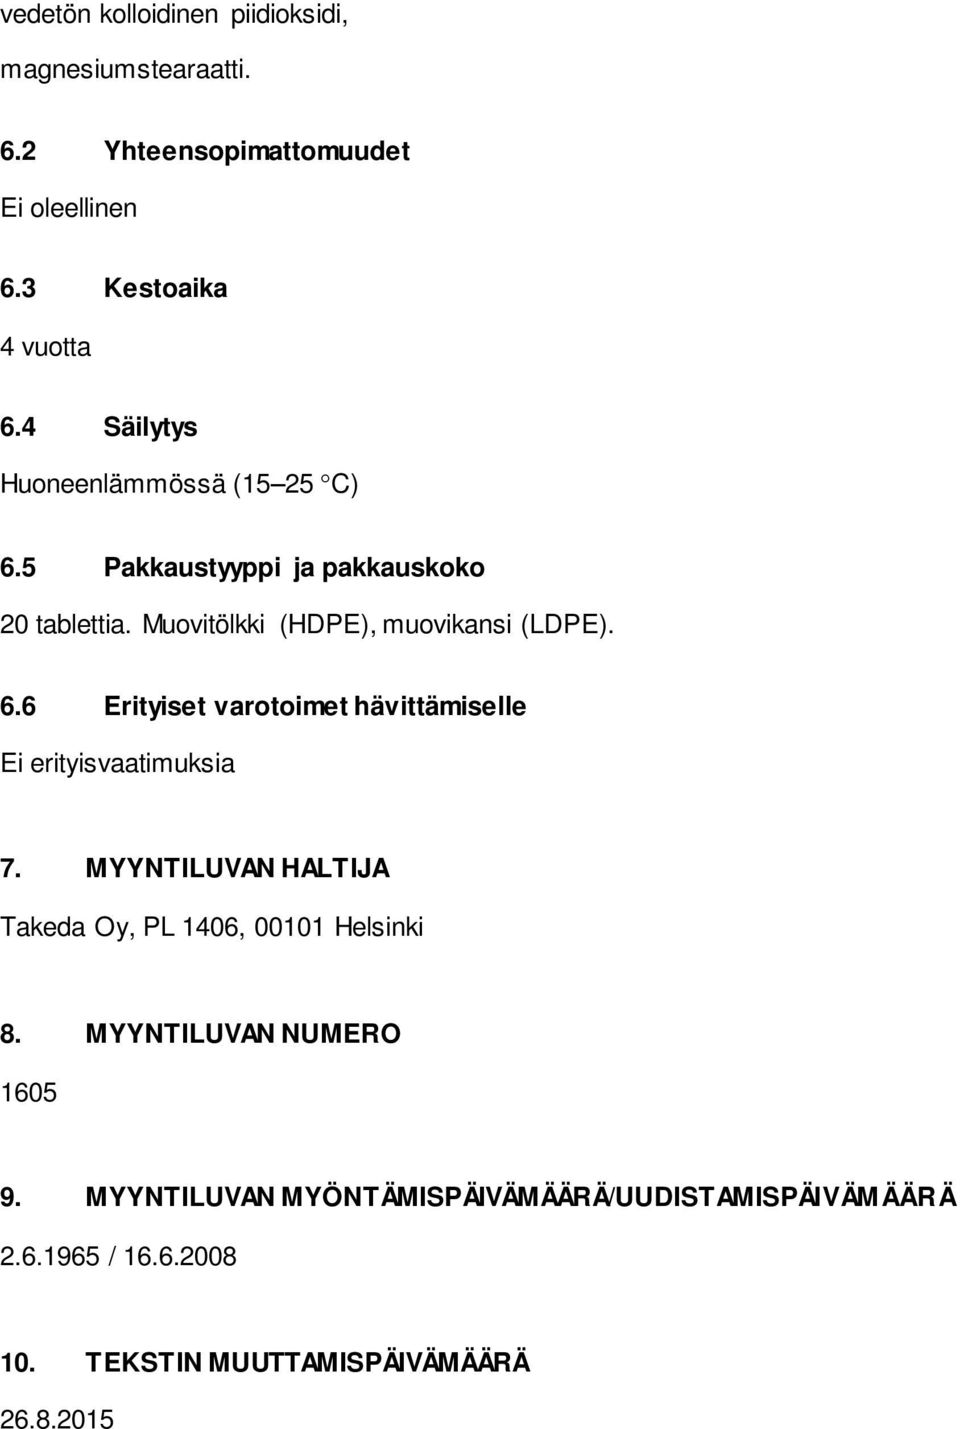 MYYNTILUVAN HALTIJA Takeda Oy, PL 1406, 00101 Helsinki 8. MYYNTILUVAN NUMERO 1605 9.